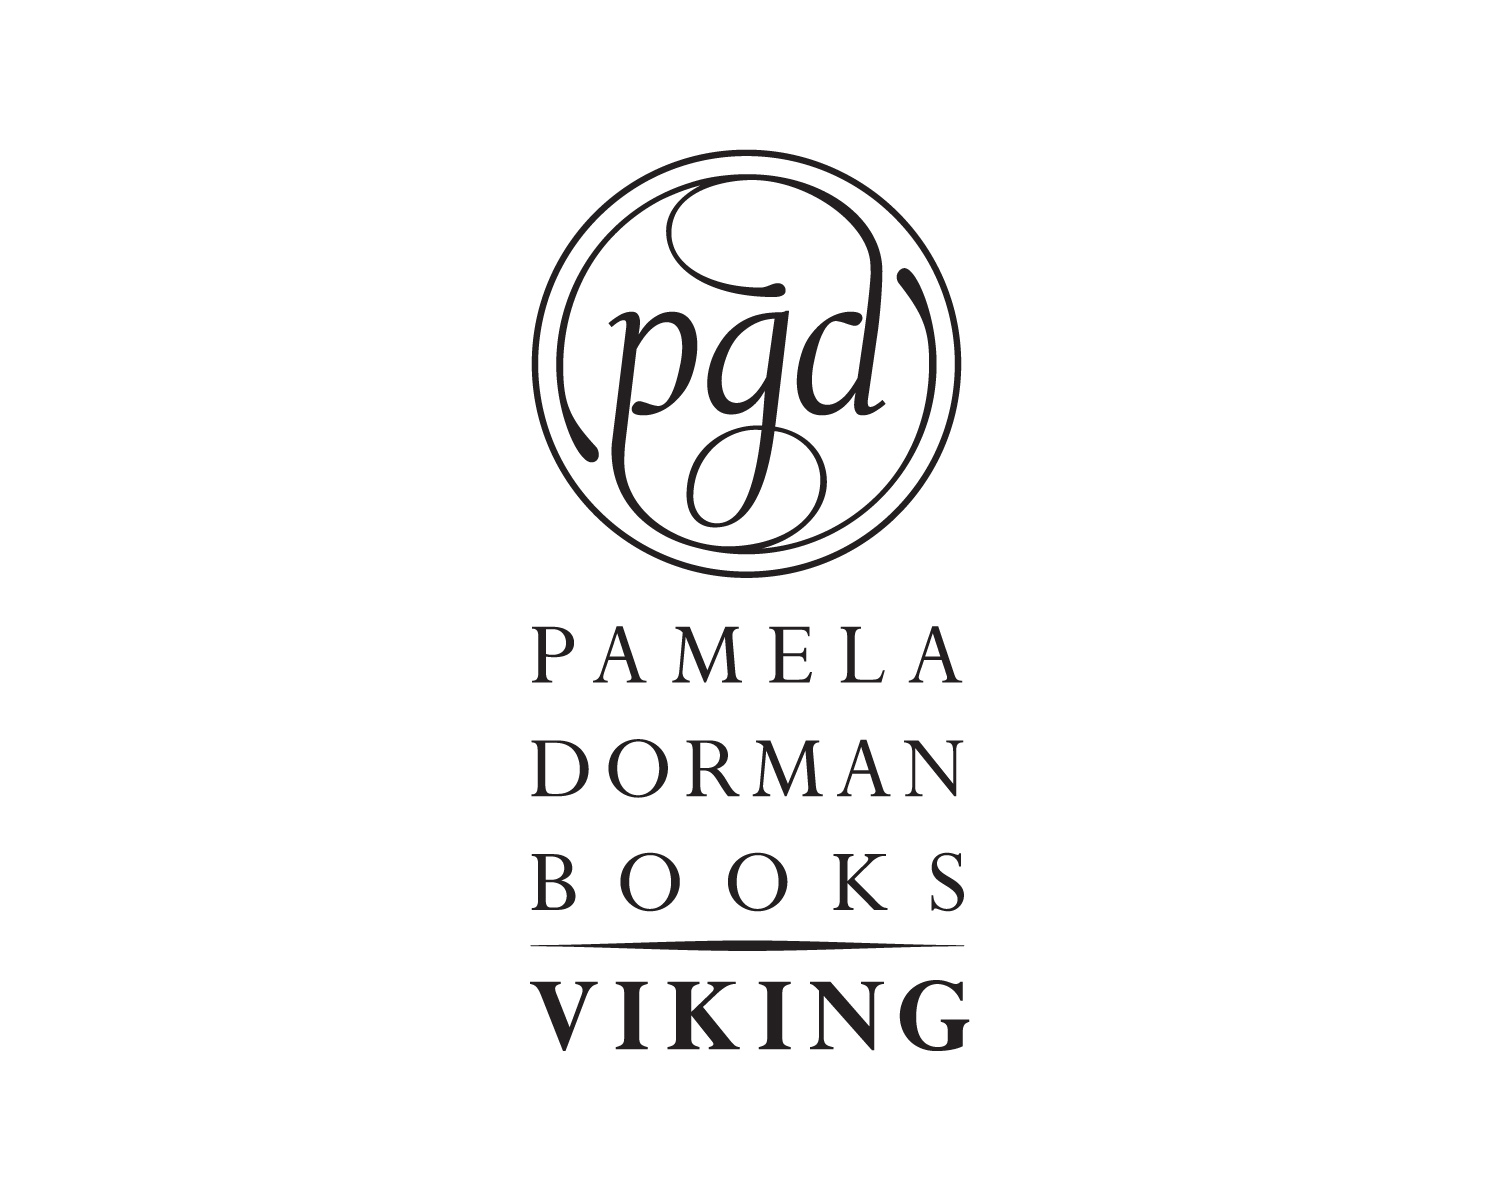 Pamela Dorman Books